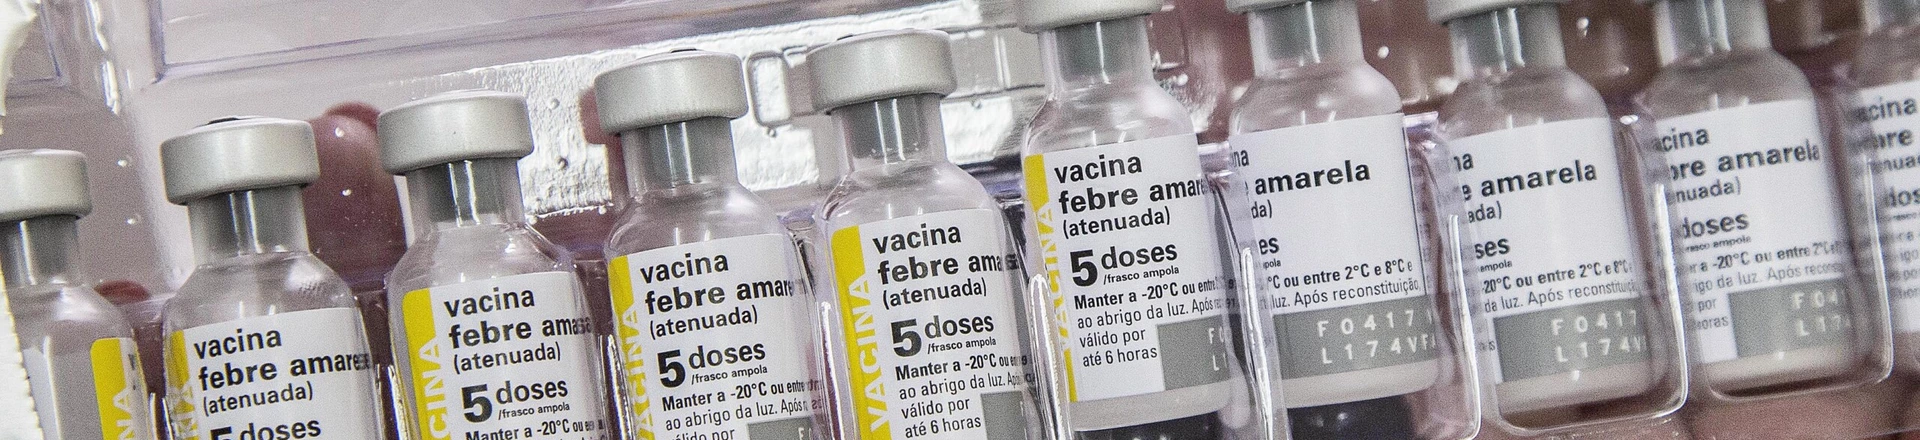 Curitiba tem cronograma de vacinação contra a Febre Amarela.Curitiba, 16/01/2018Foto: Valdecir Galor/SMCS